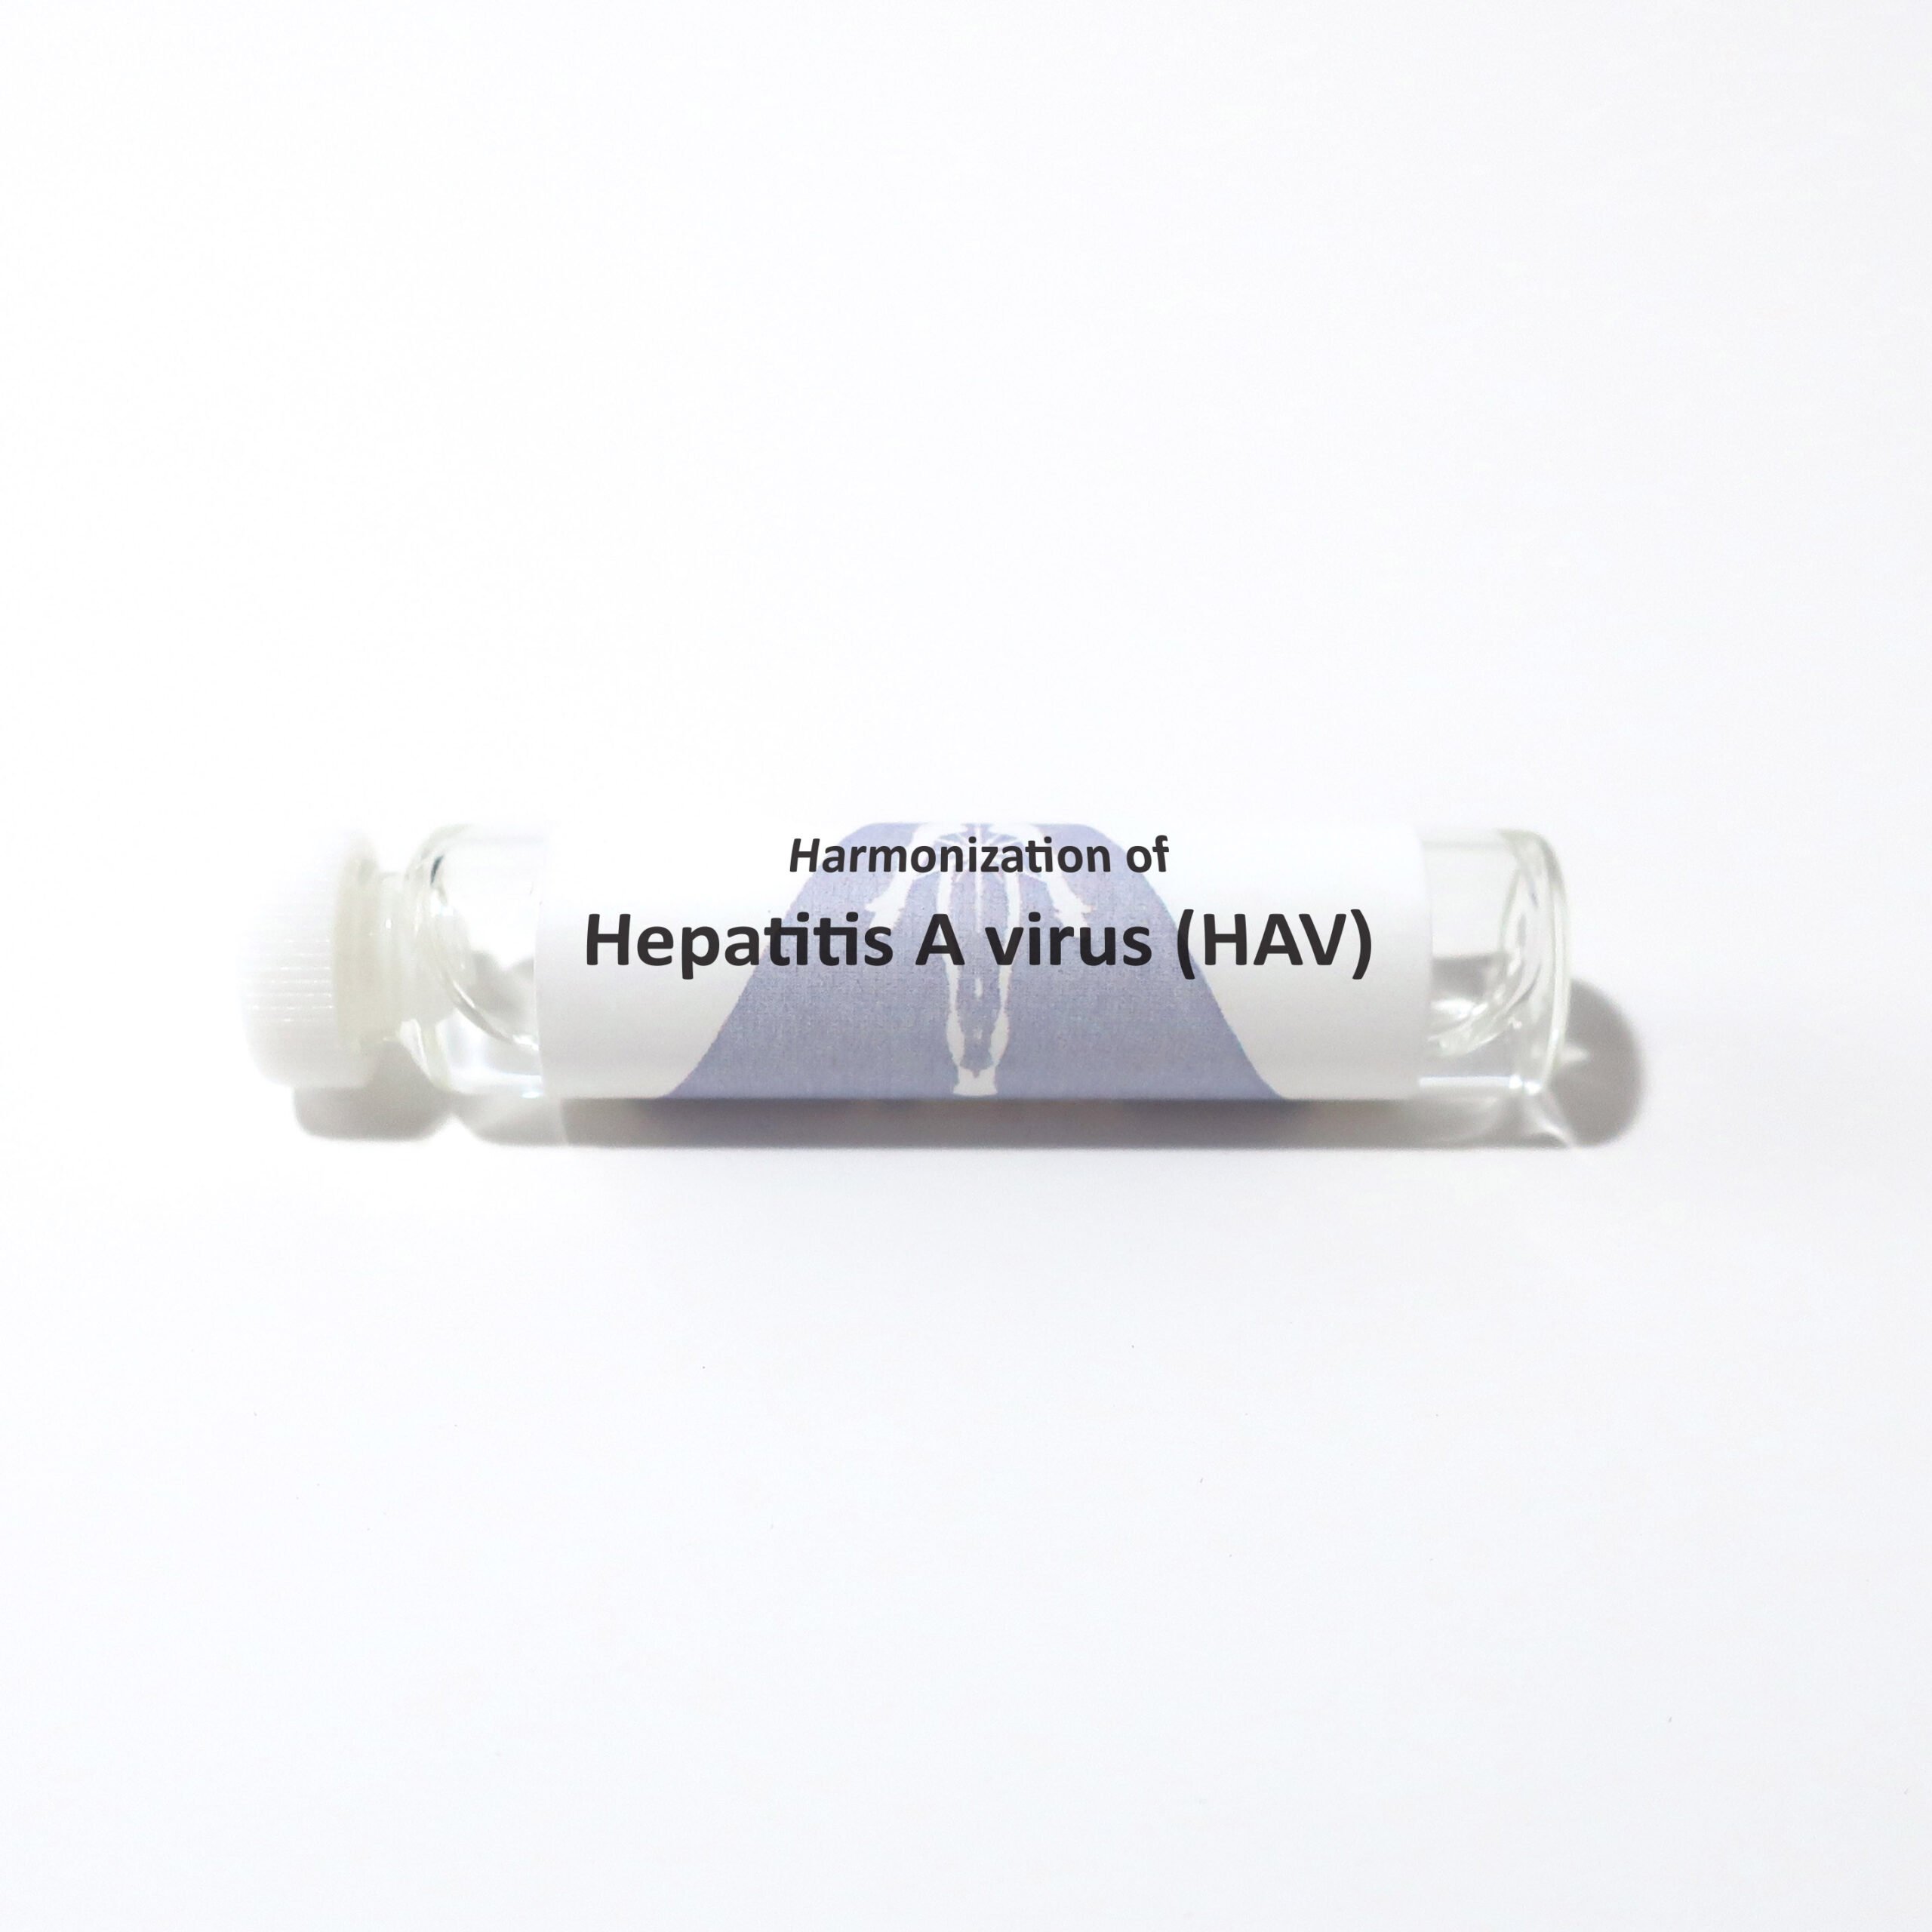 Hepatitis A virus (HAV)